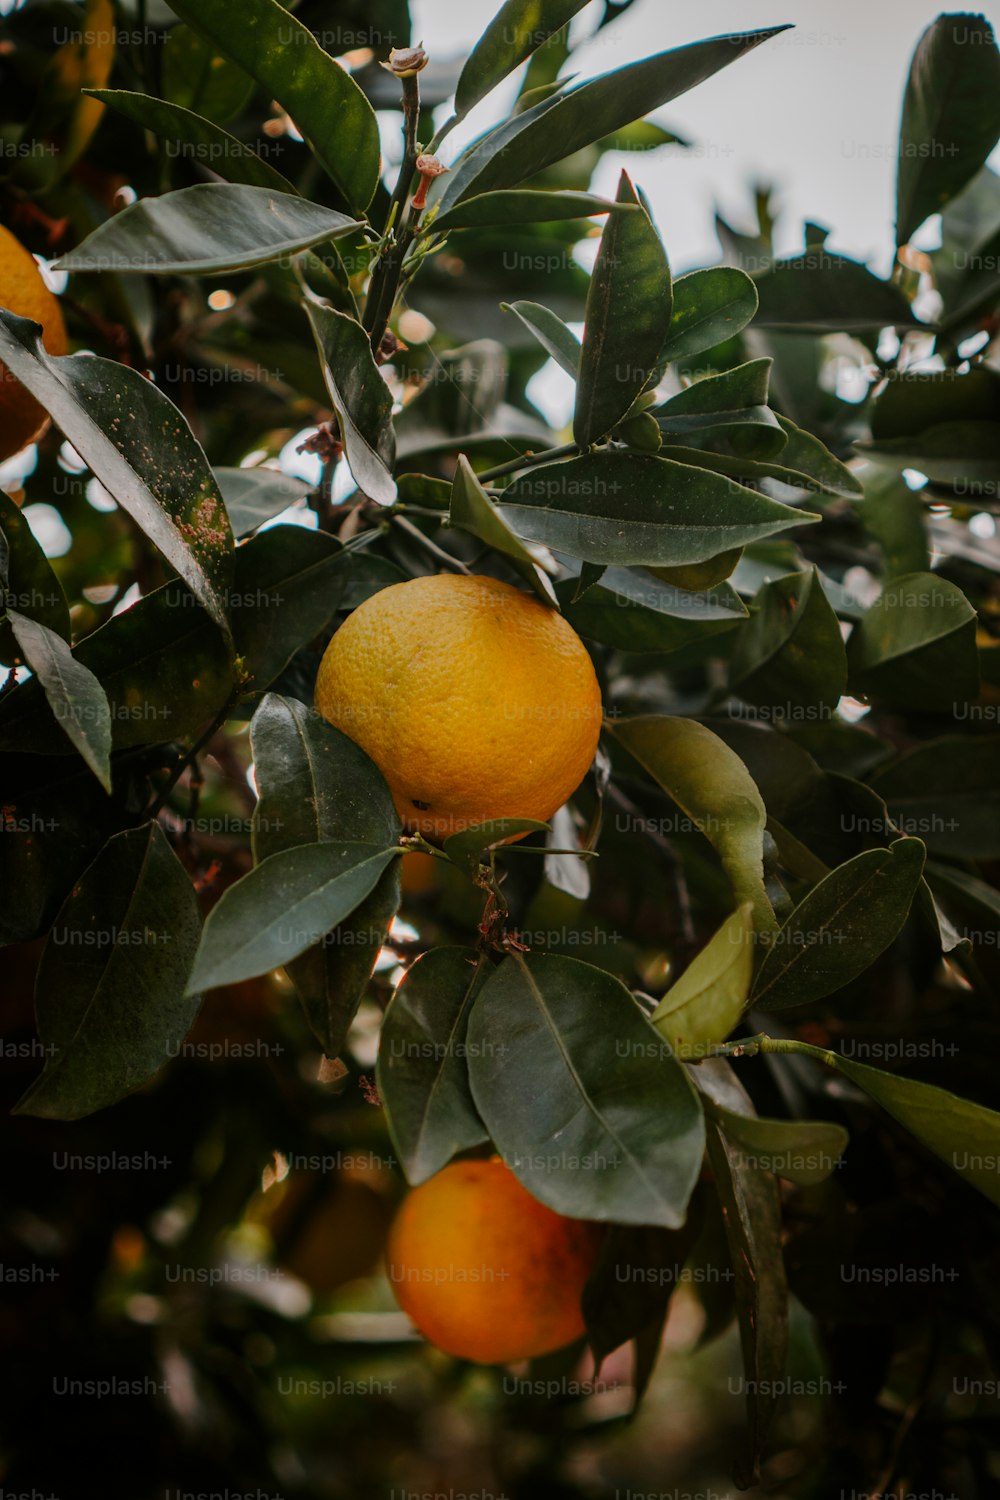 Ein Baum gefüllt mit vielen reifen Orangen